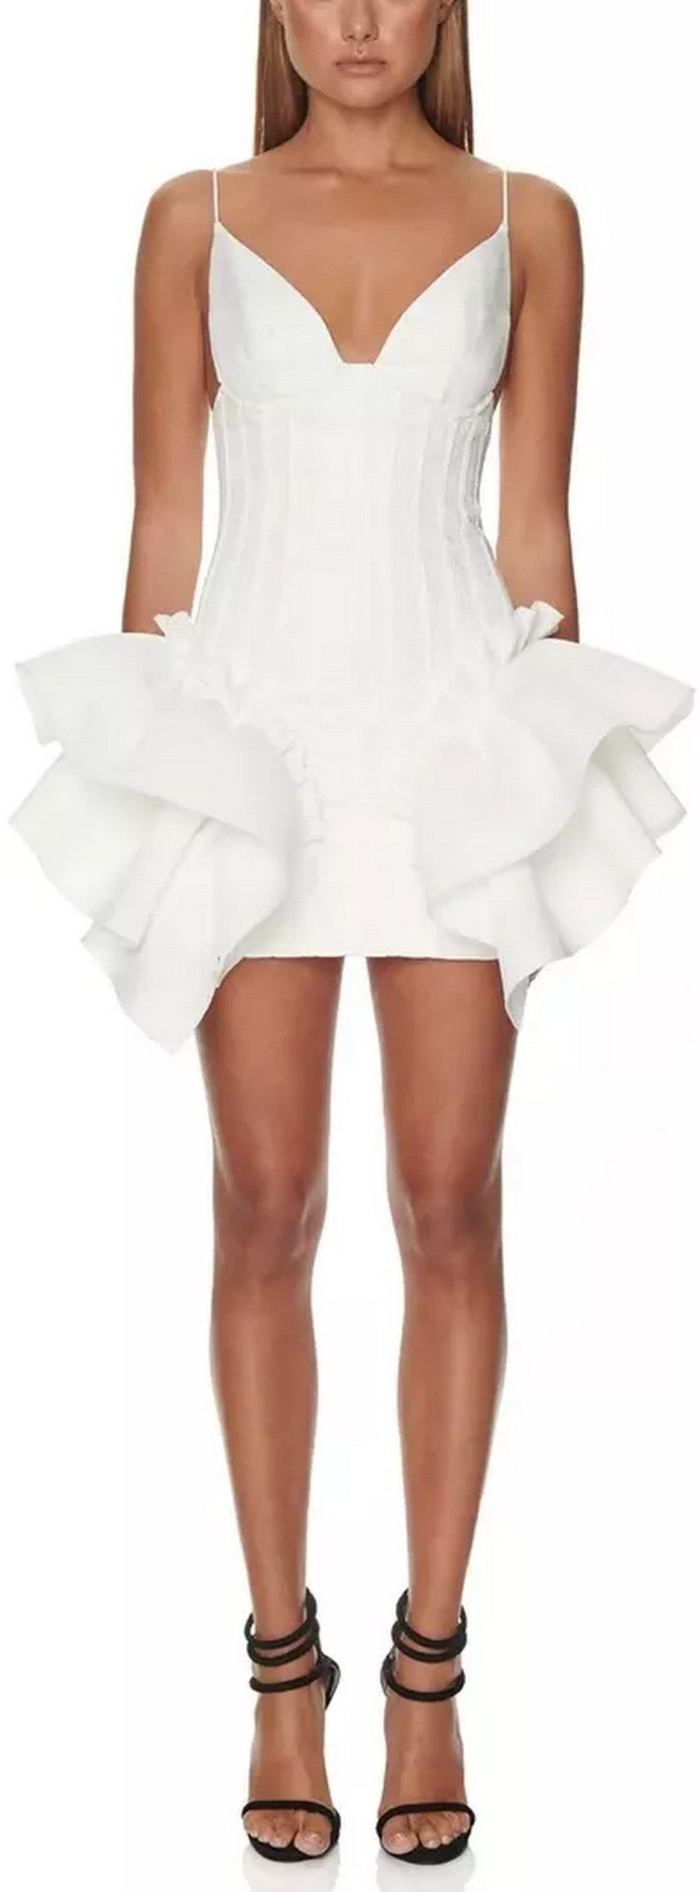 Ruffle-Peplum Mini Dress | DESIGNER INSPIRED FASHIONS